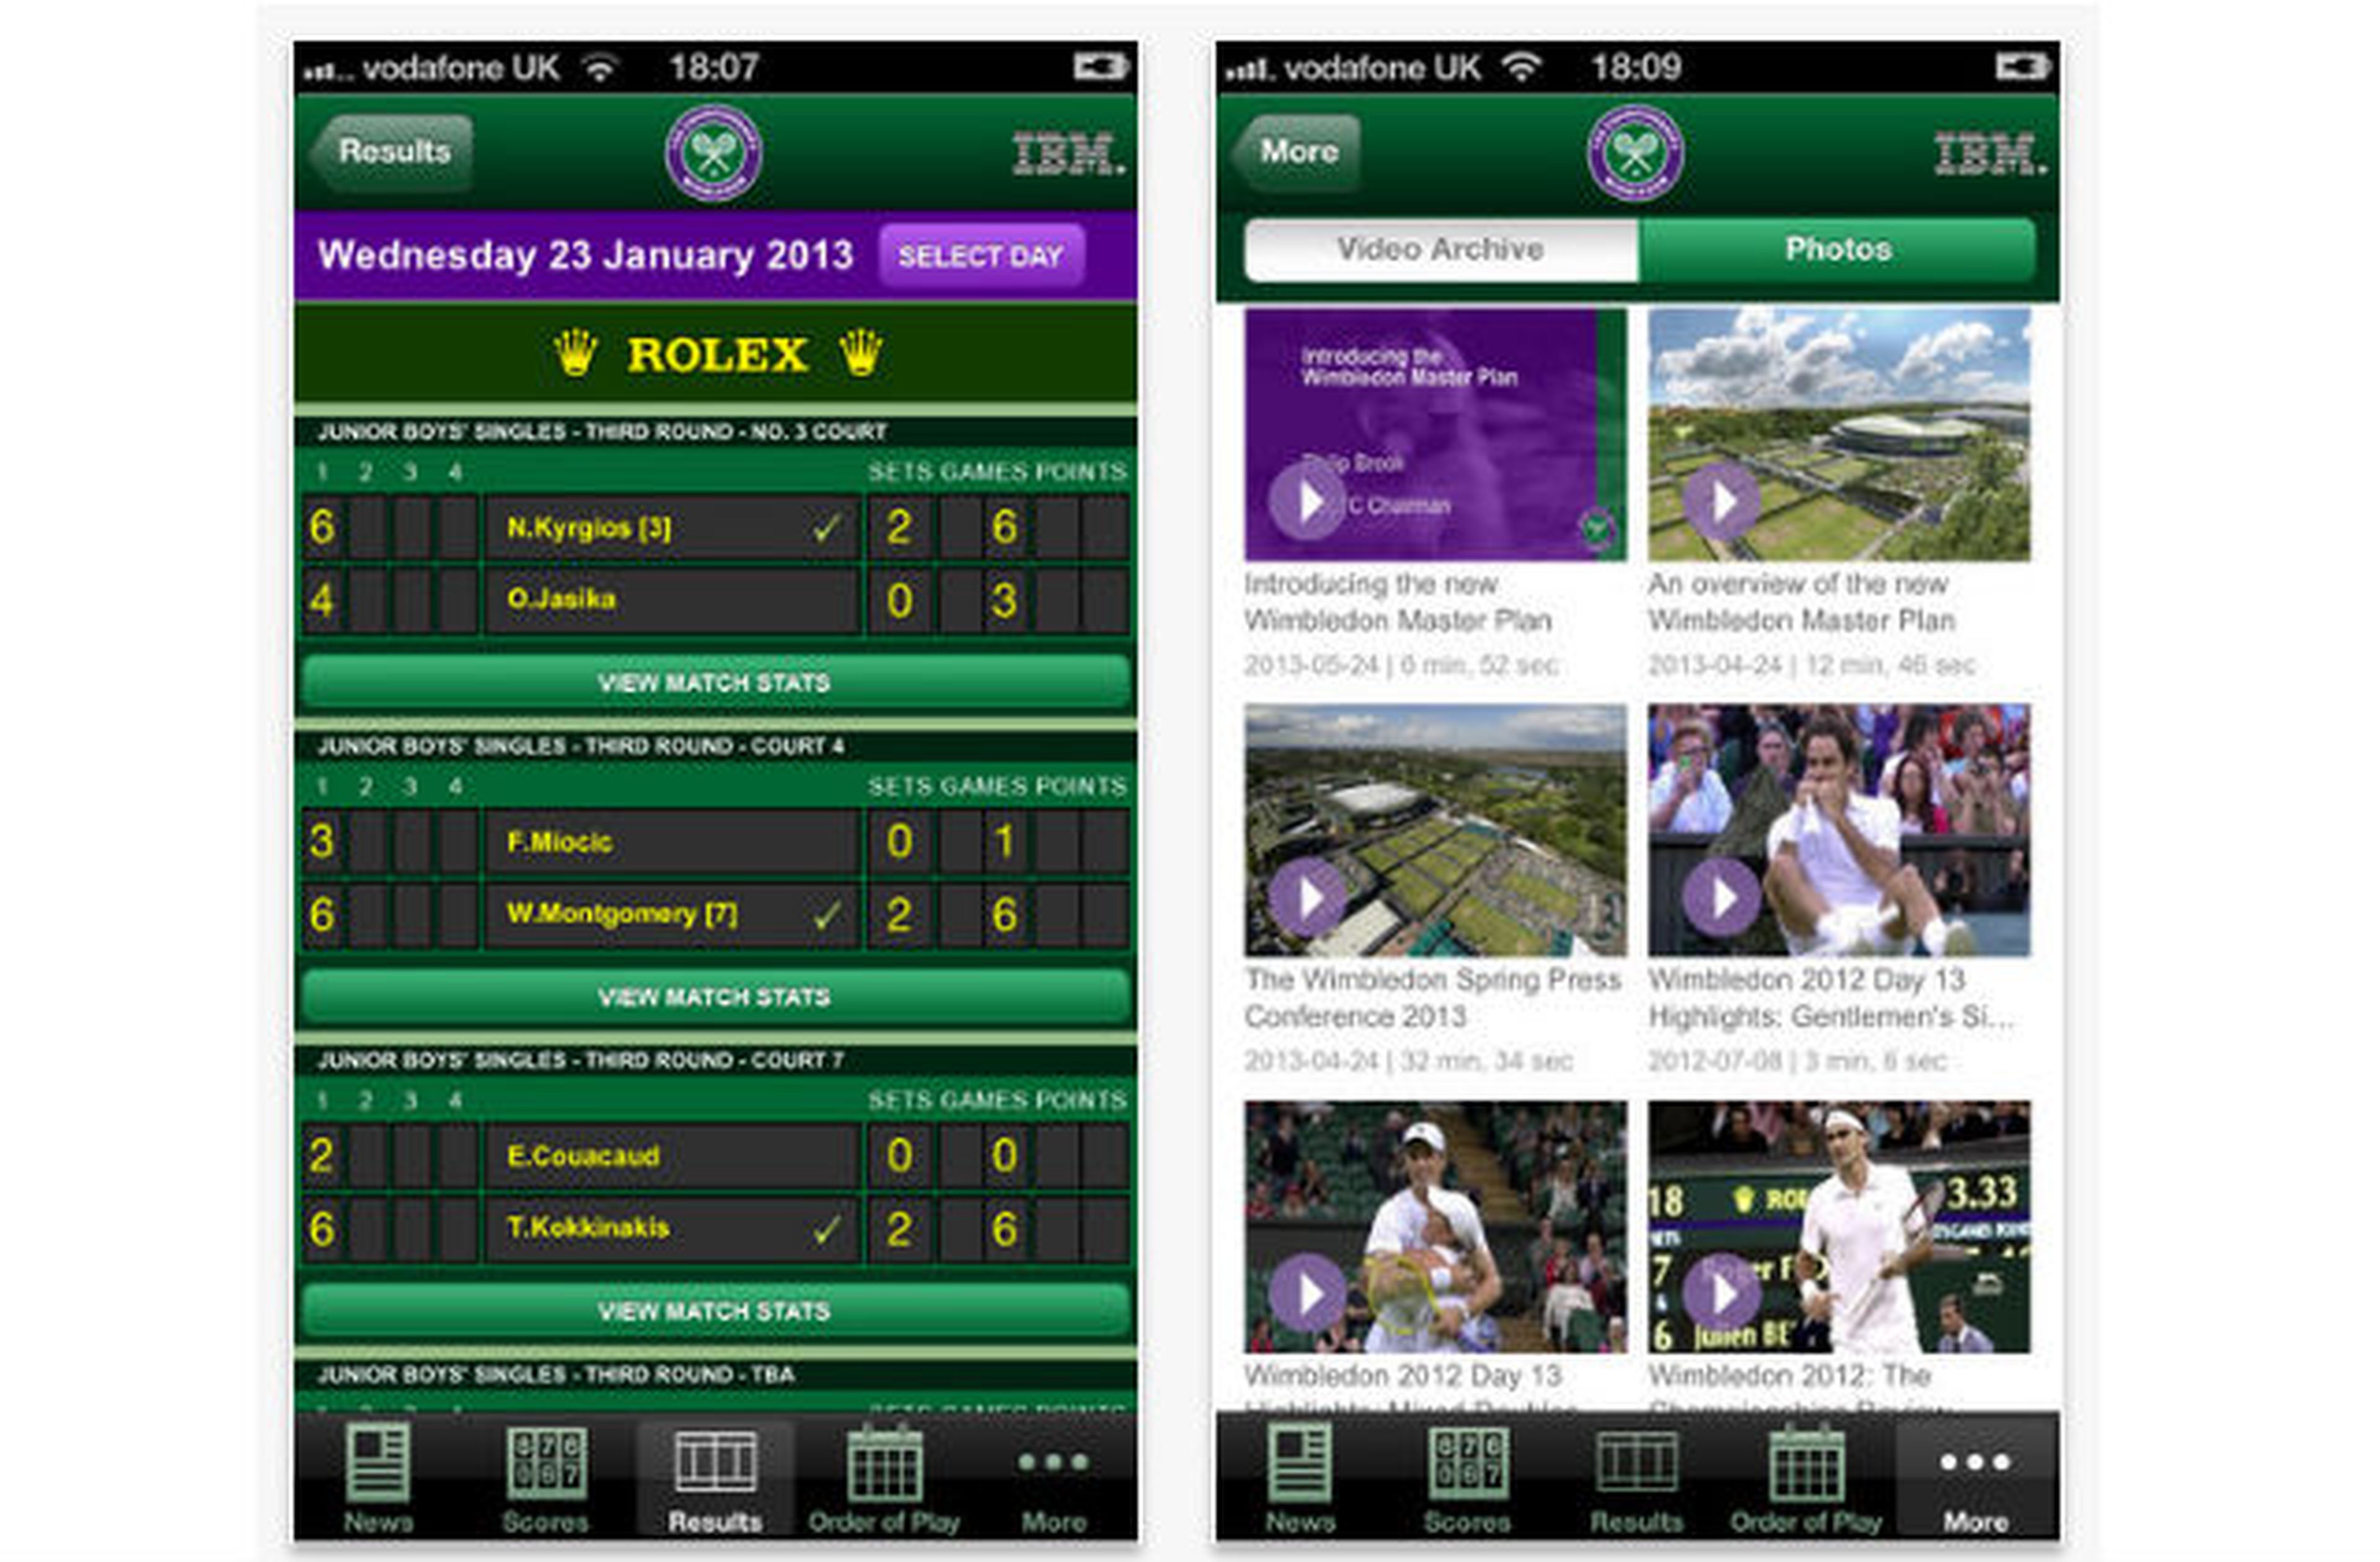 The Championships, Wimbledon 2013